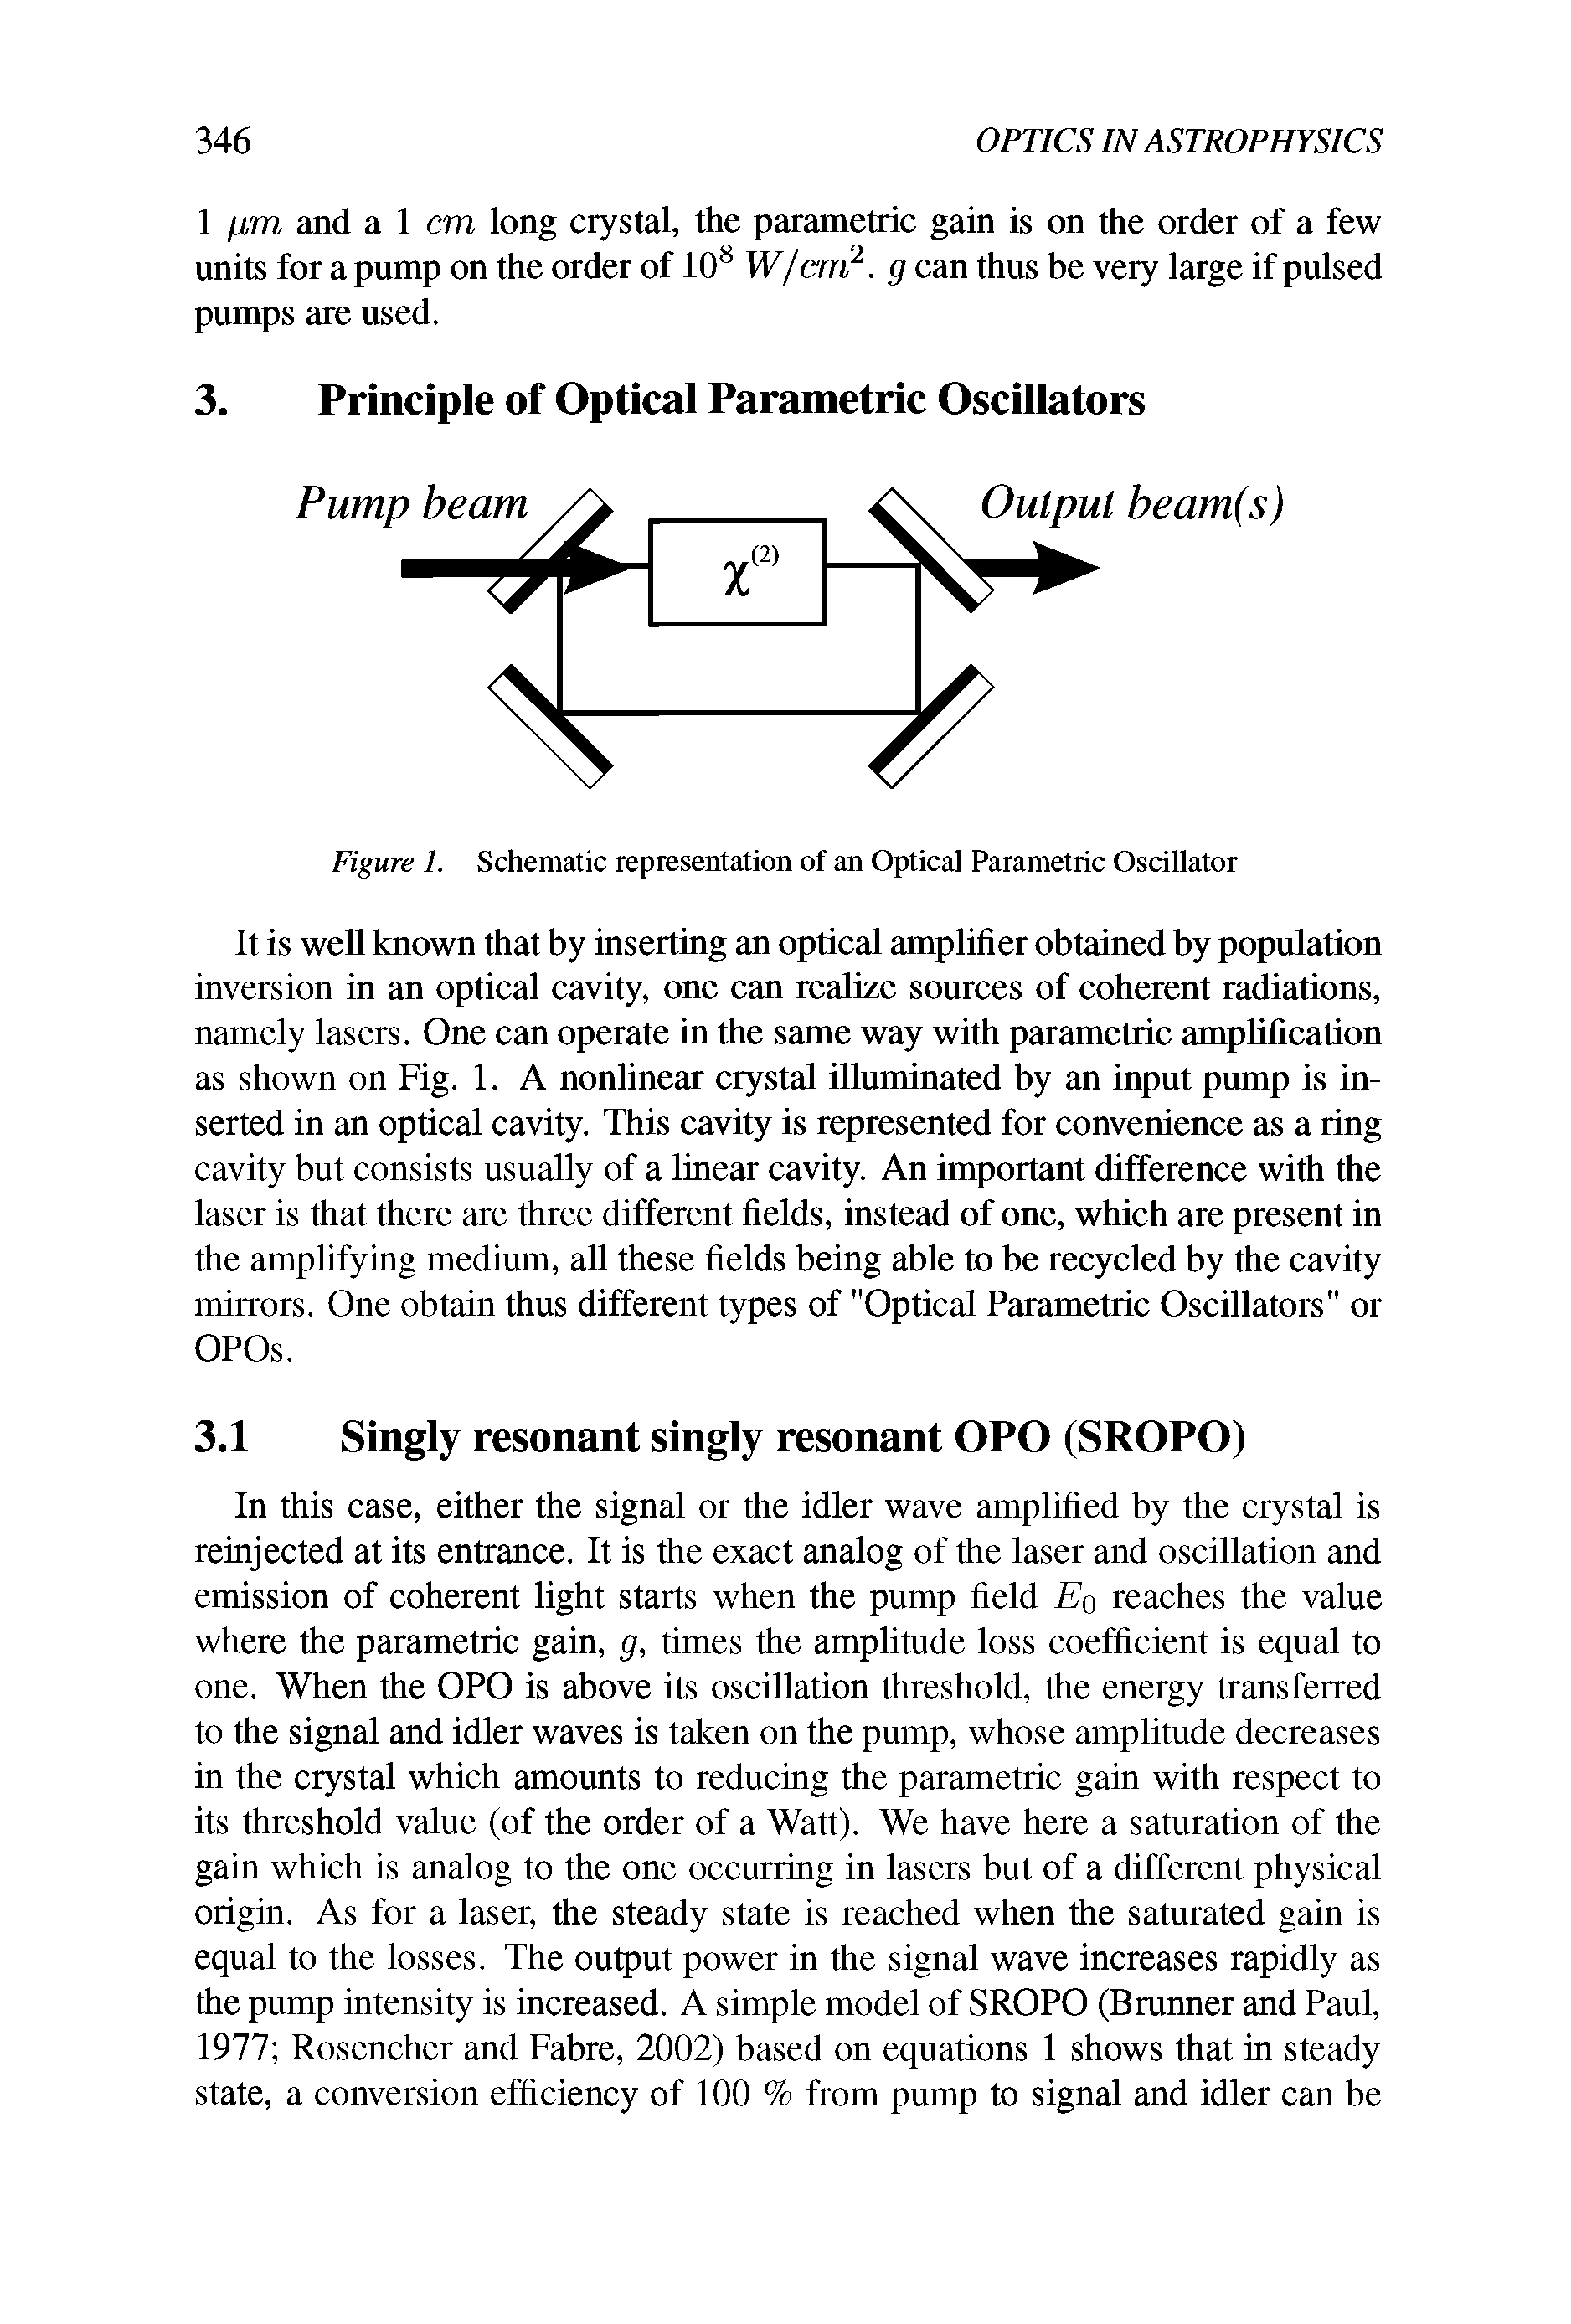 Figure 1. Schematic representation of an Optical Parametric Oscillator...